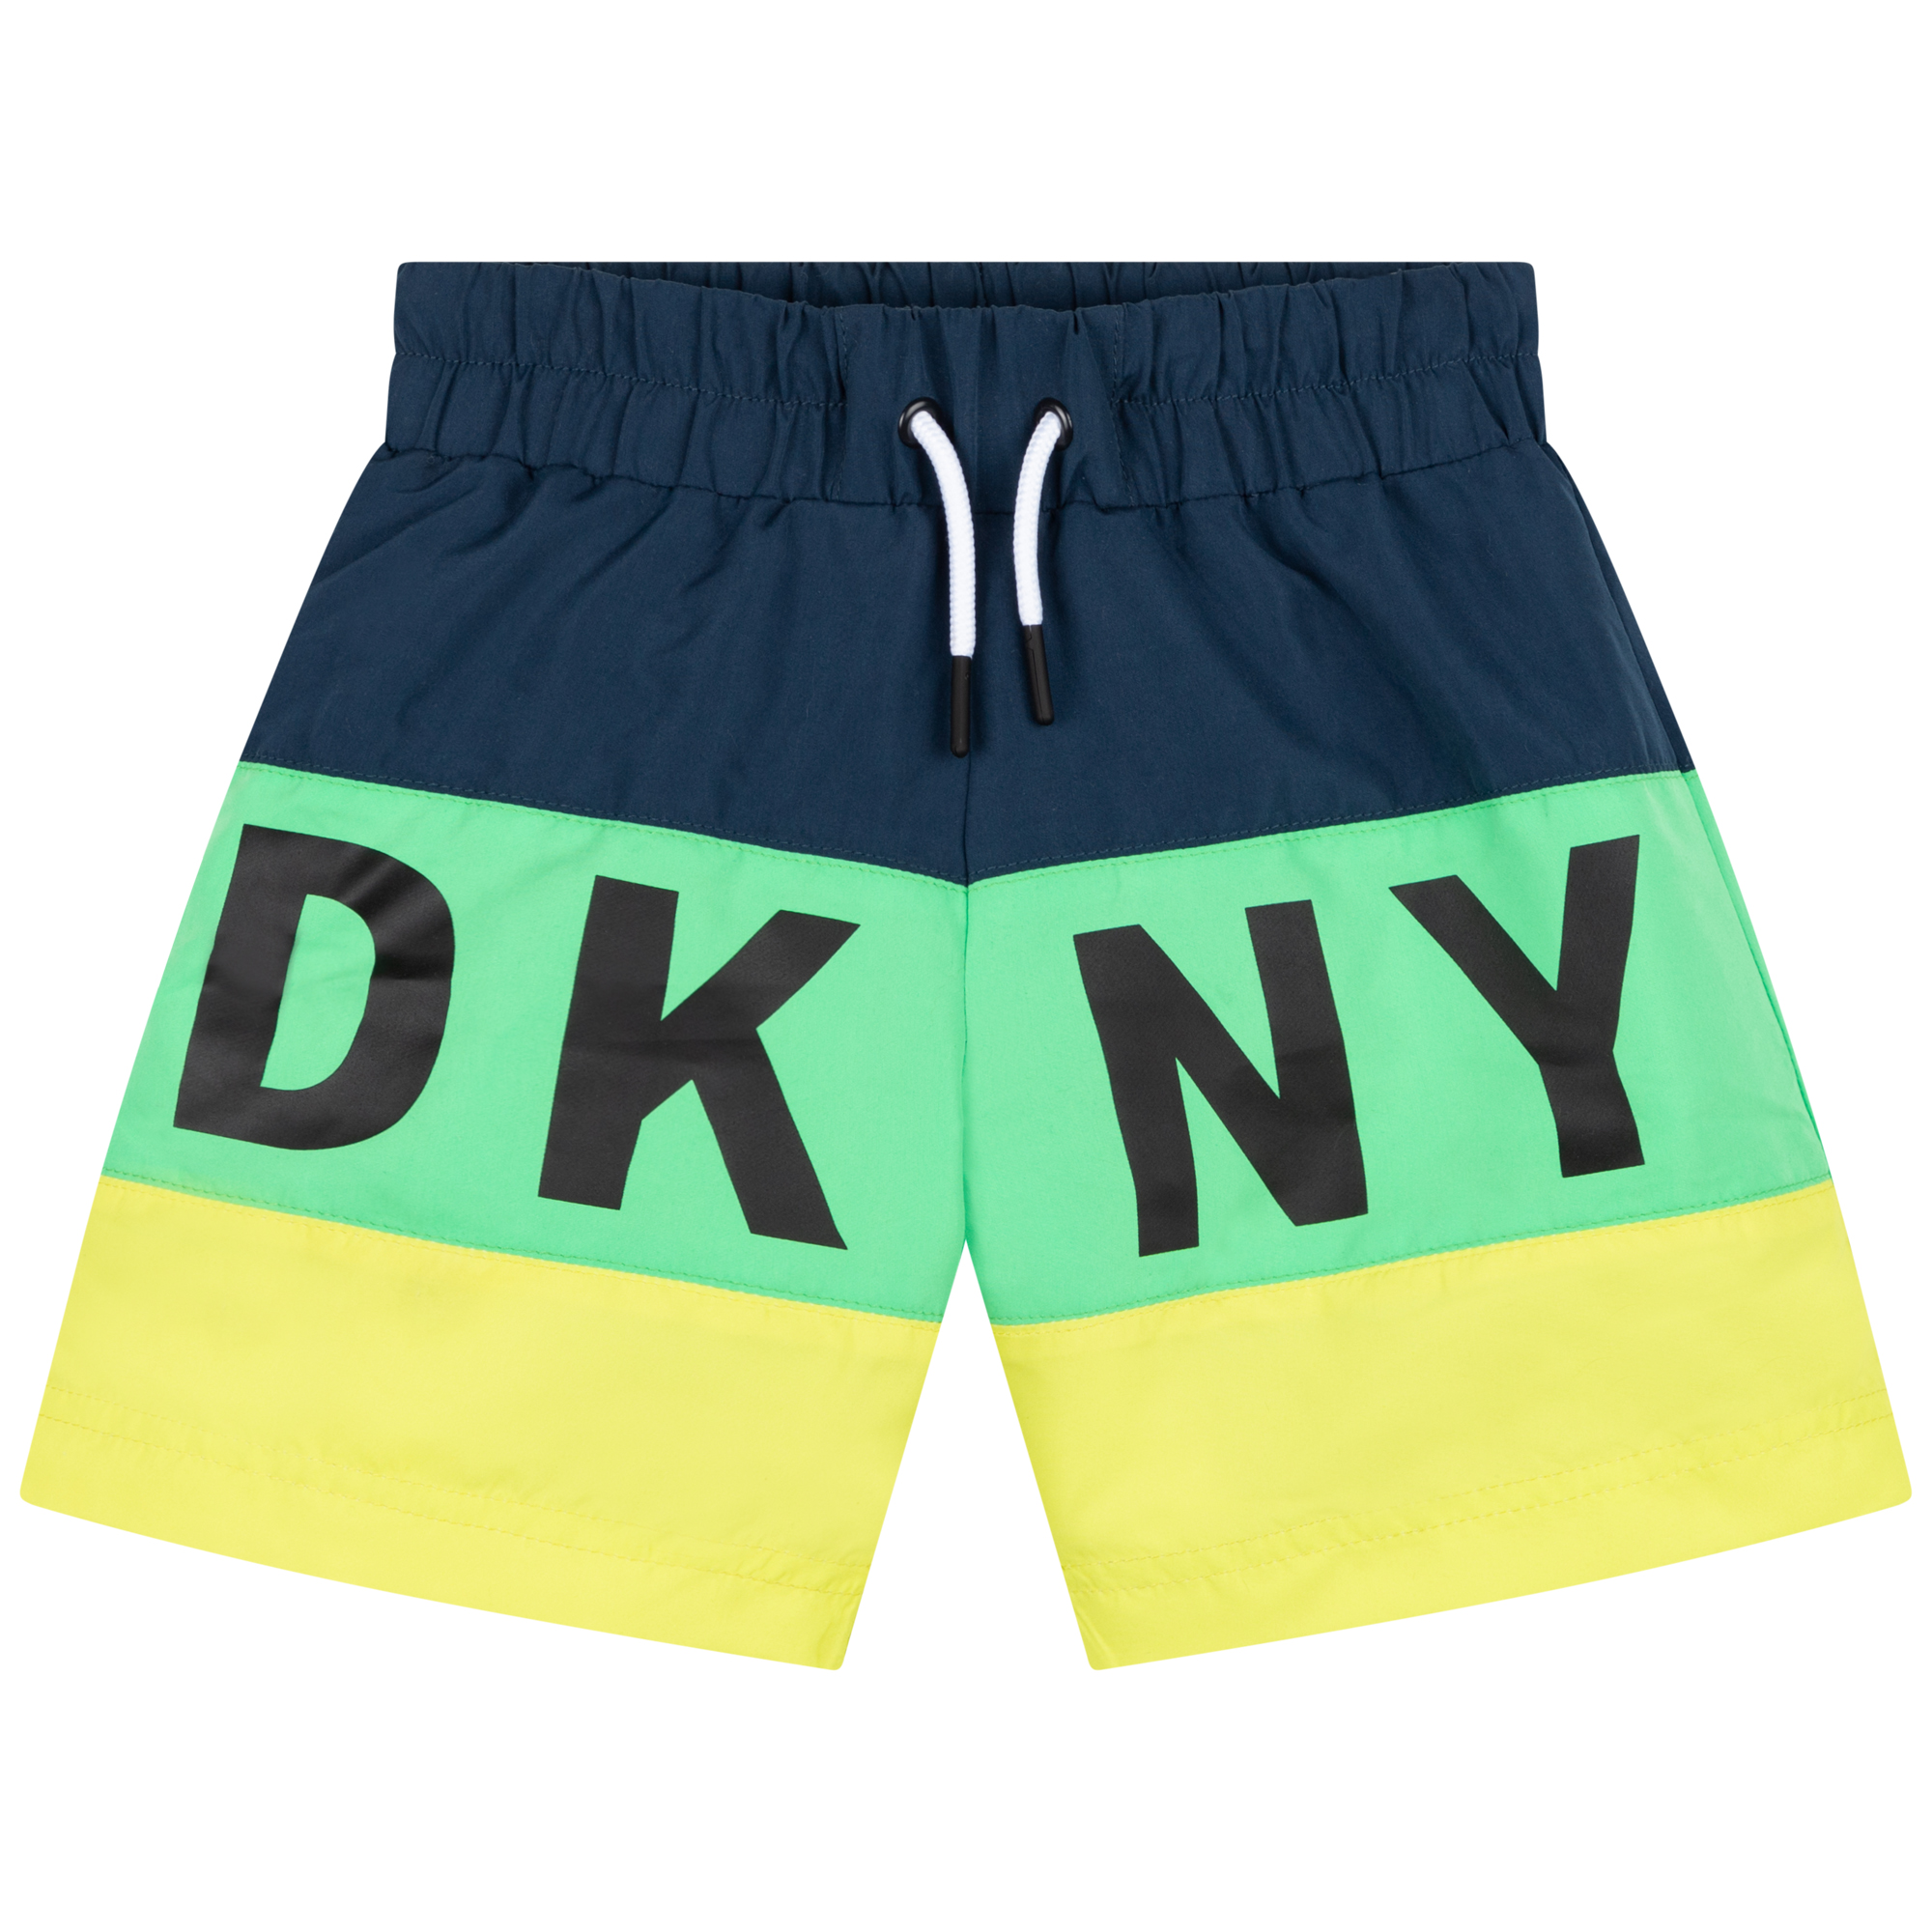 Striped bathing shorts DKNY for BOY